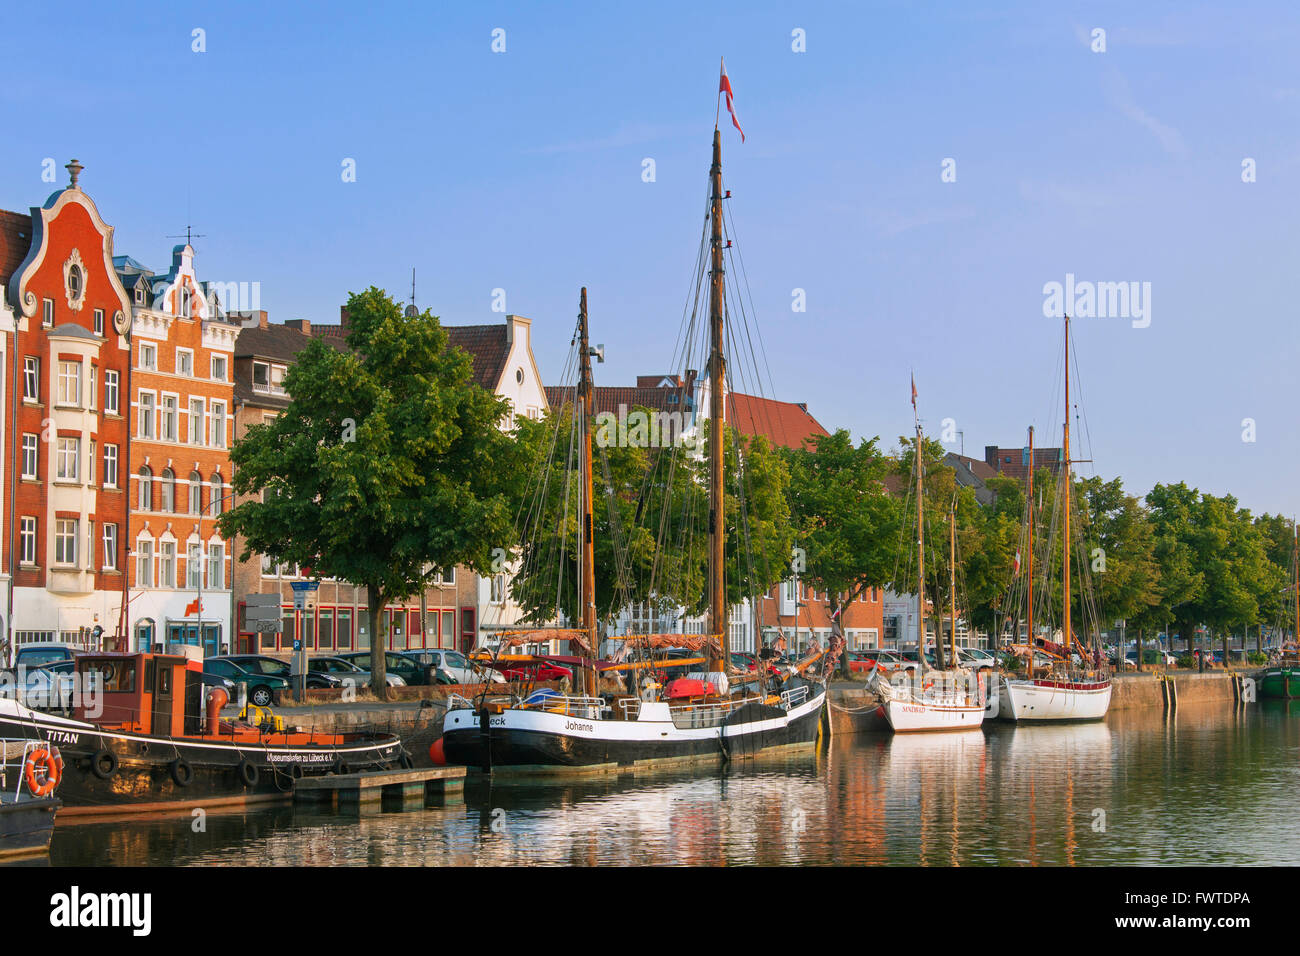 Museen-Hafen mit traditionellen Segelschiffen, festgemacht an der Untertrave in der Hansestadt Lübeck, Deutschland Stockfoto